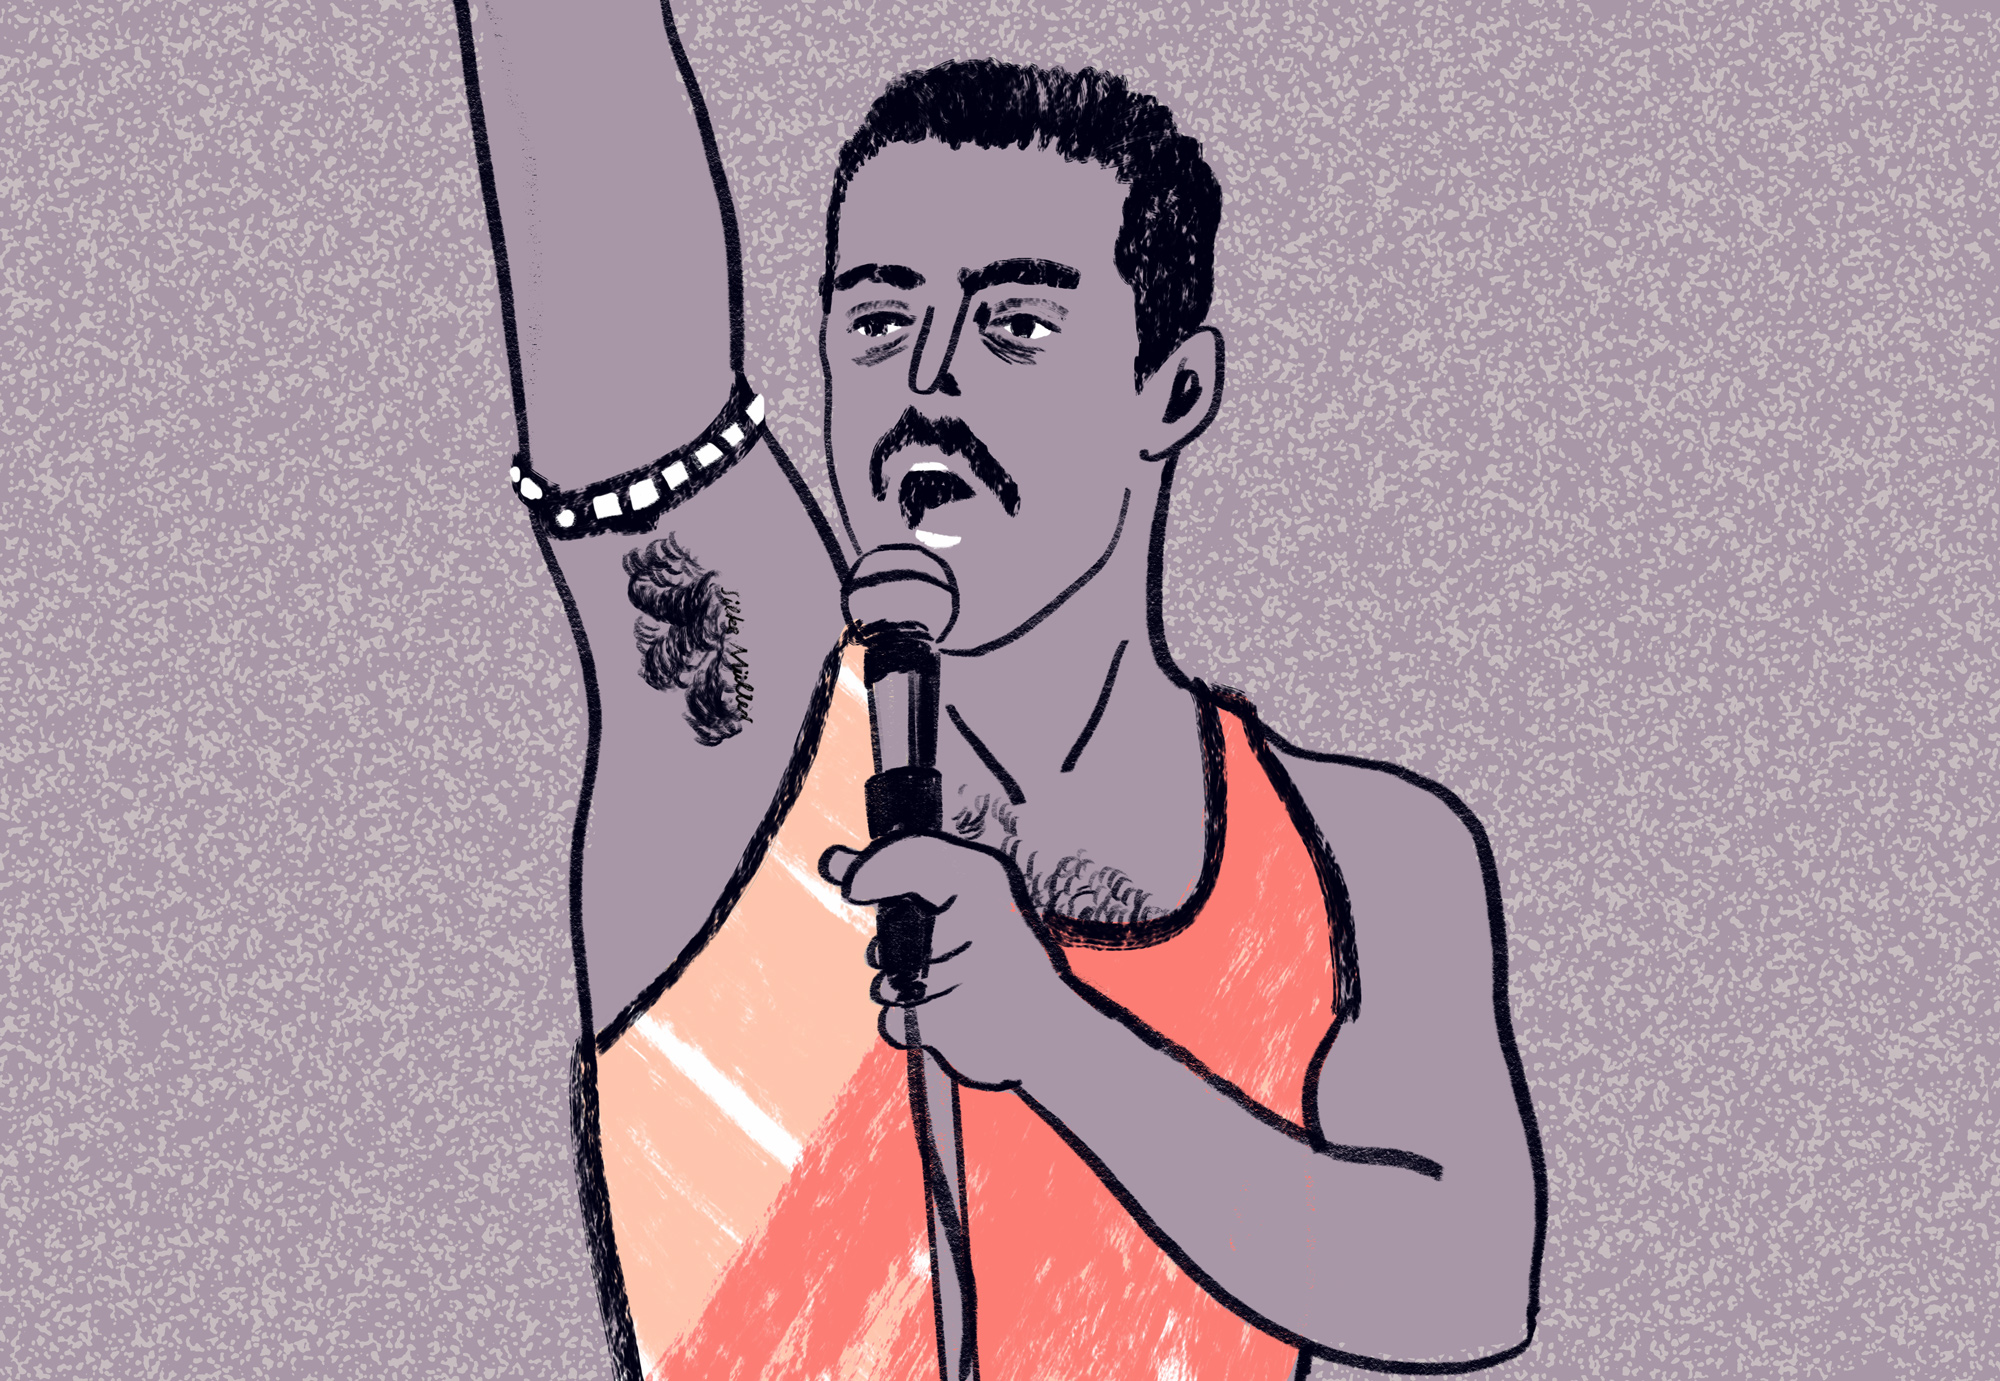 Auf der Illustration von Silke Müller sieht man den Schauspieler, der Freddie Mercury spielt, in dem Film Bohemian Rapsody